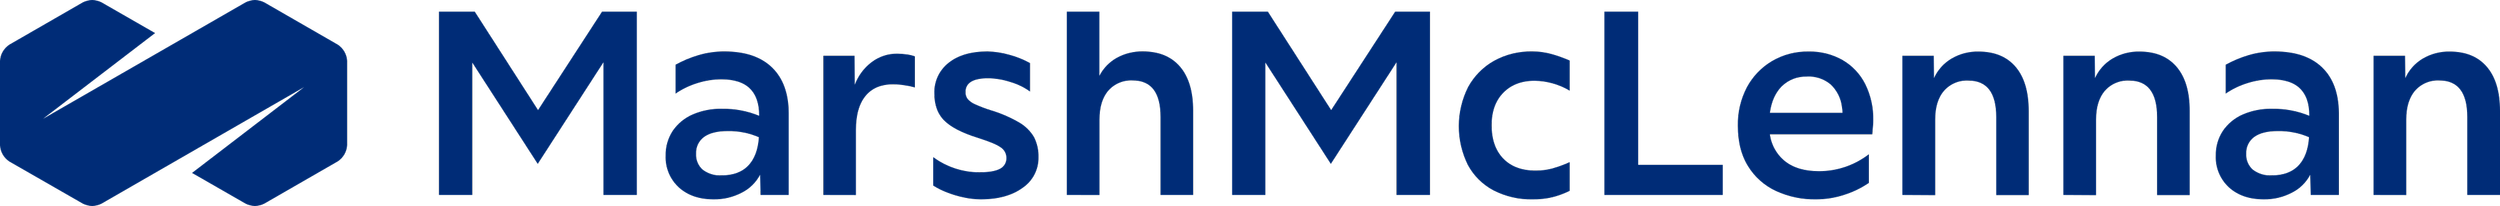 marsh-mclennan-logo.png